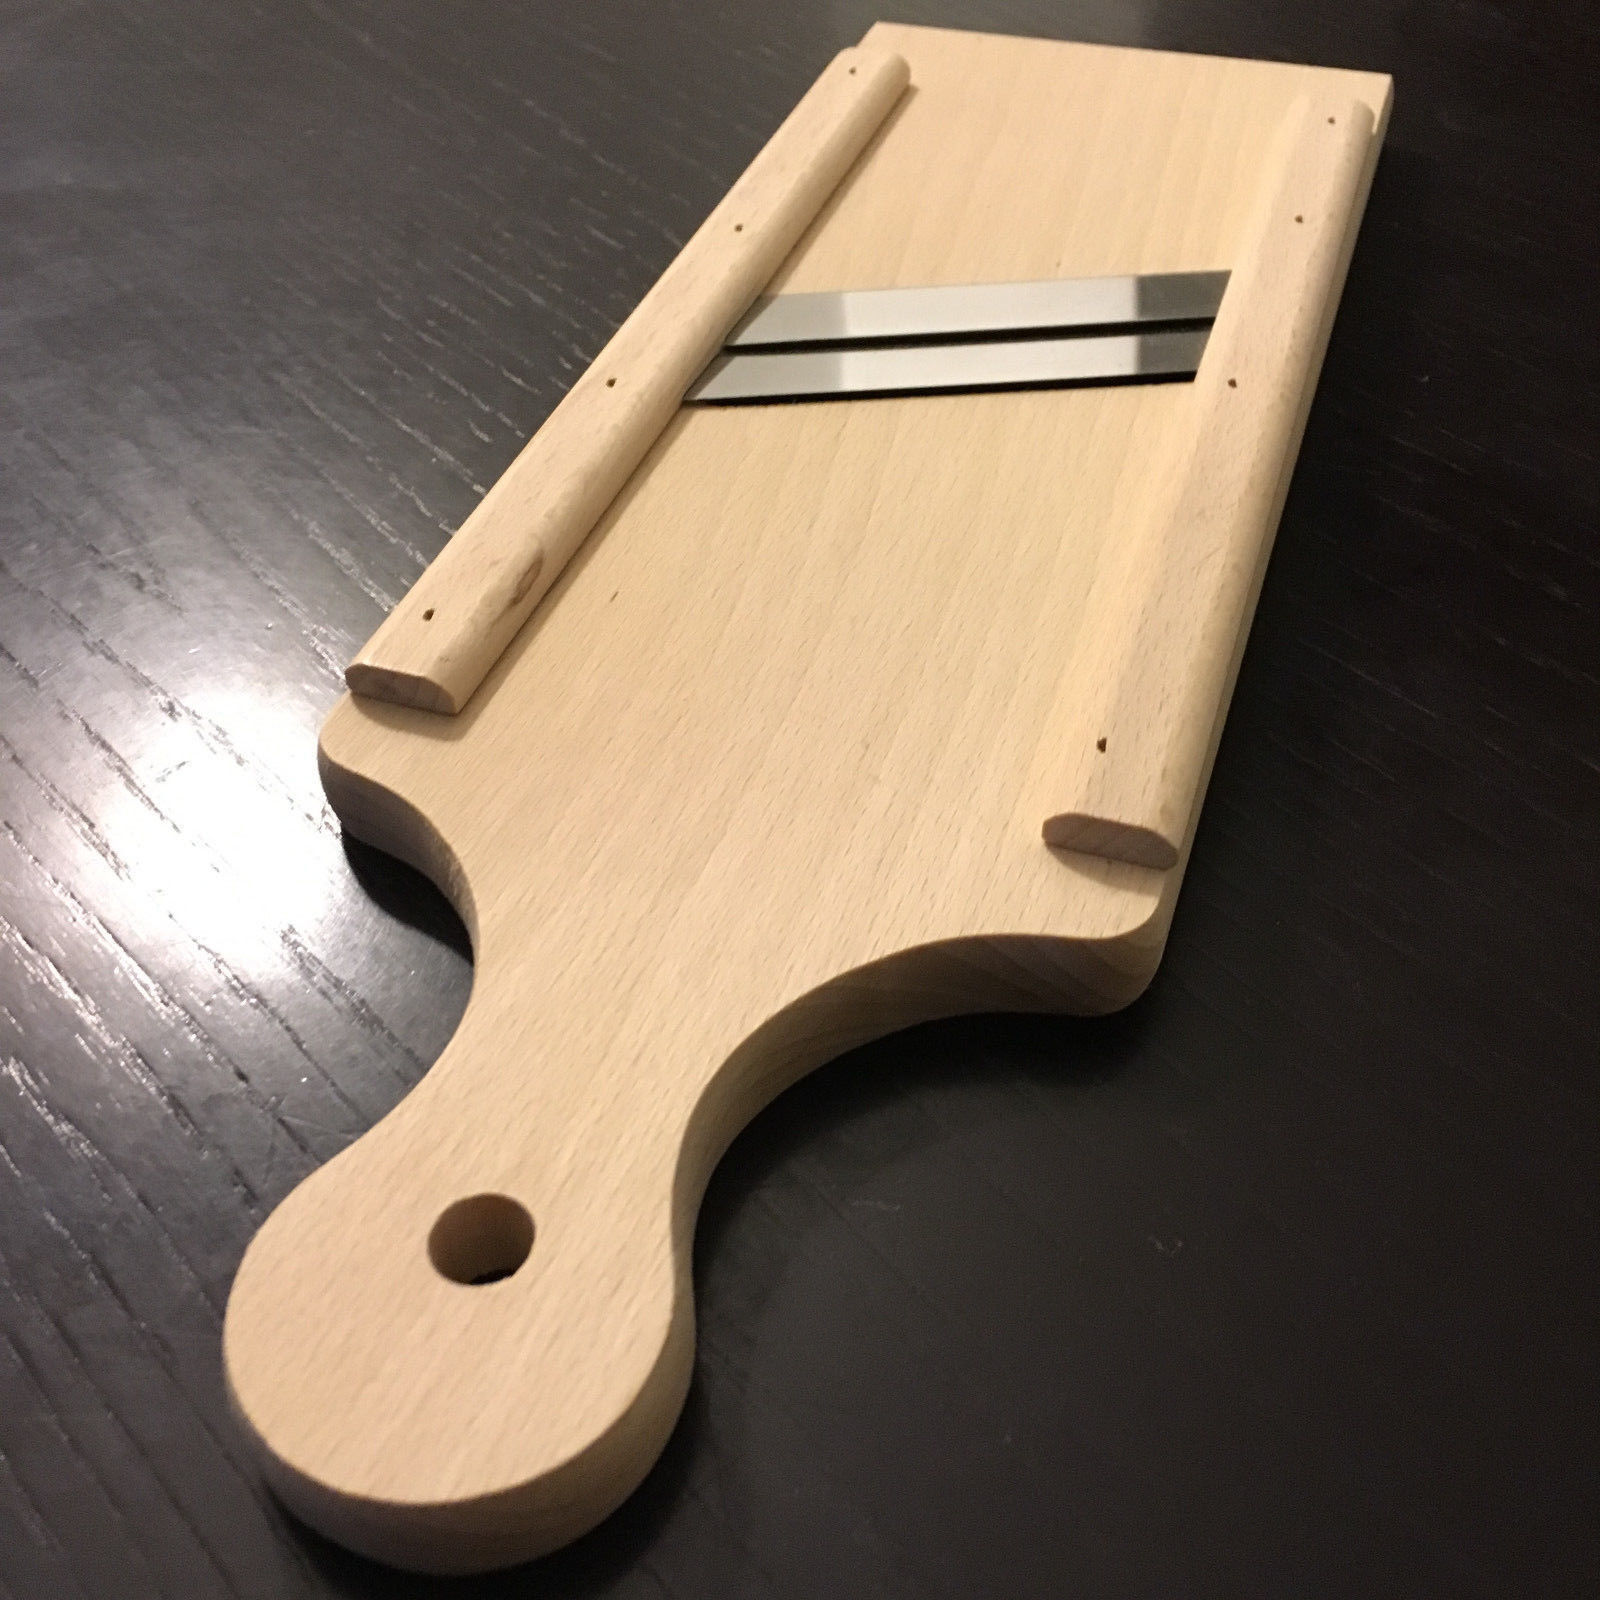 wooden mandolin slicer